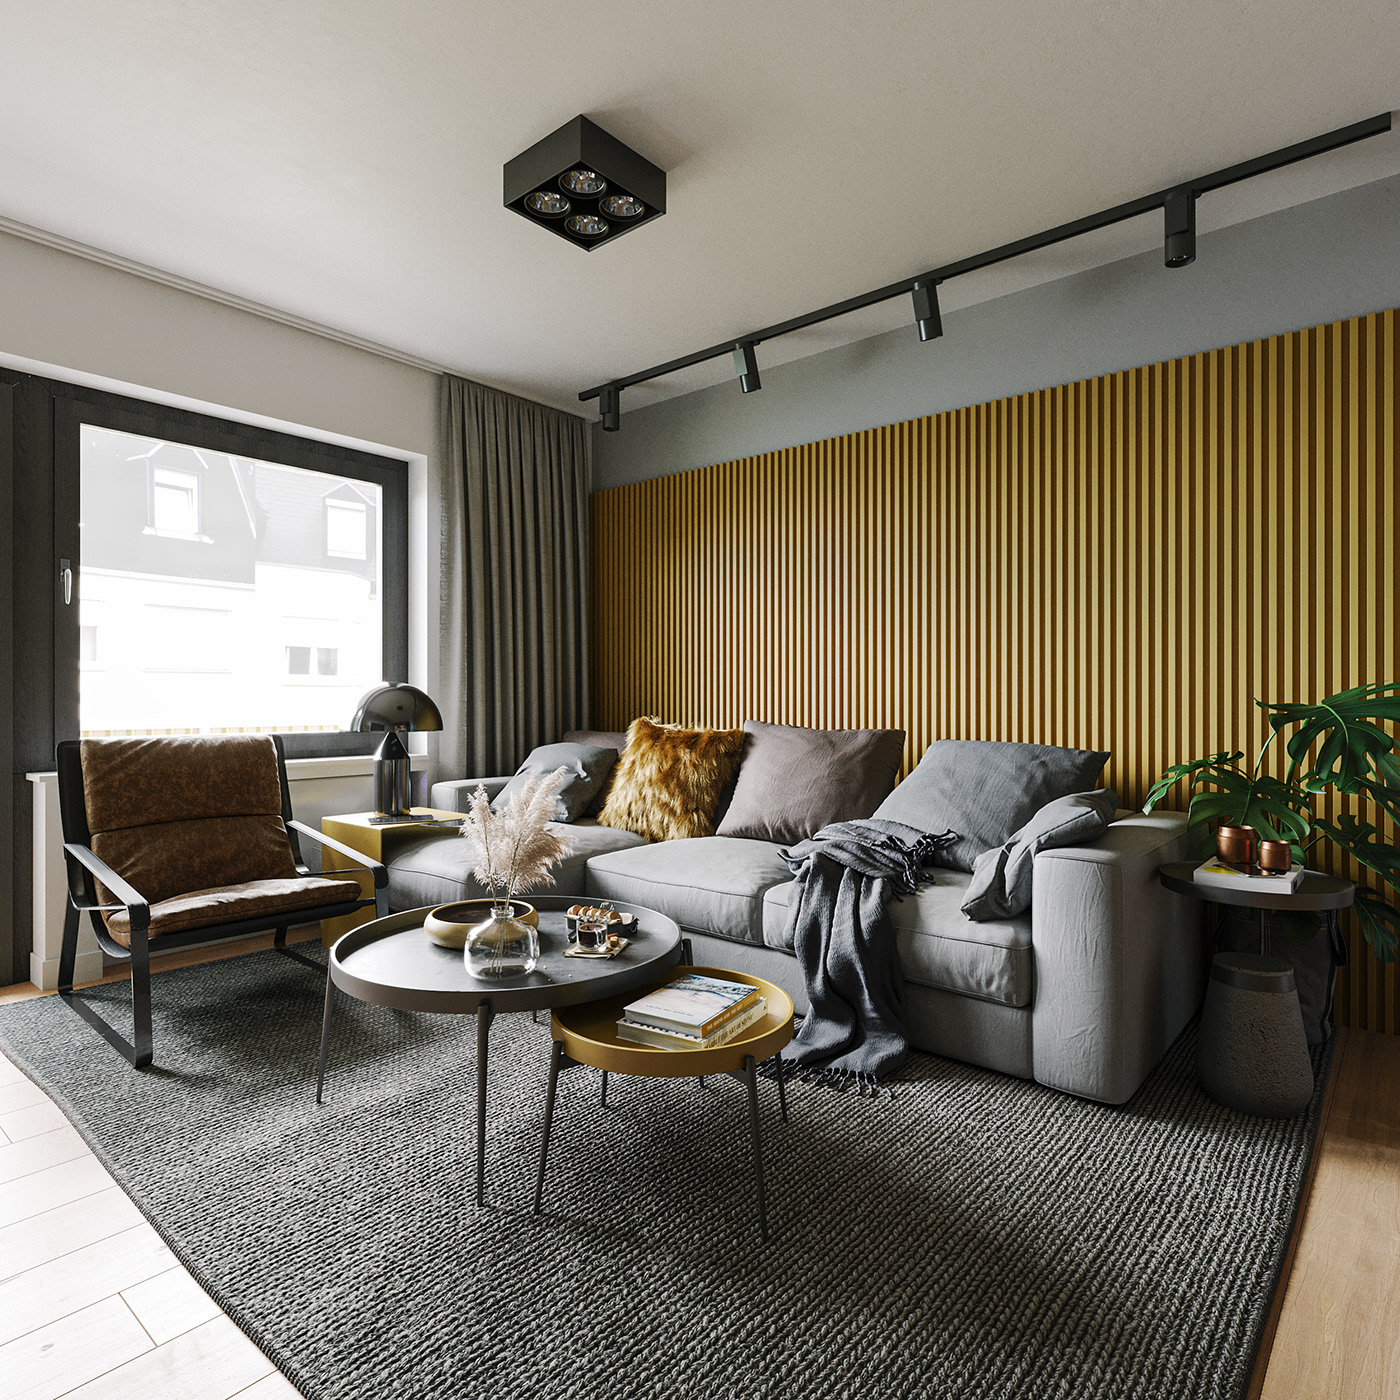 3dmax color contrast corona dark details livingroom overcast Render yellow